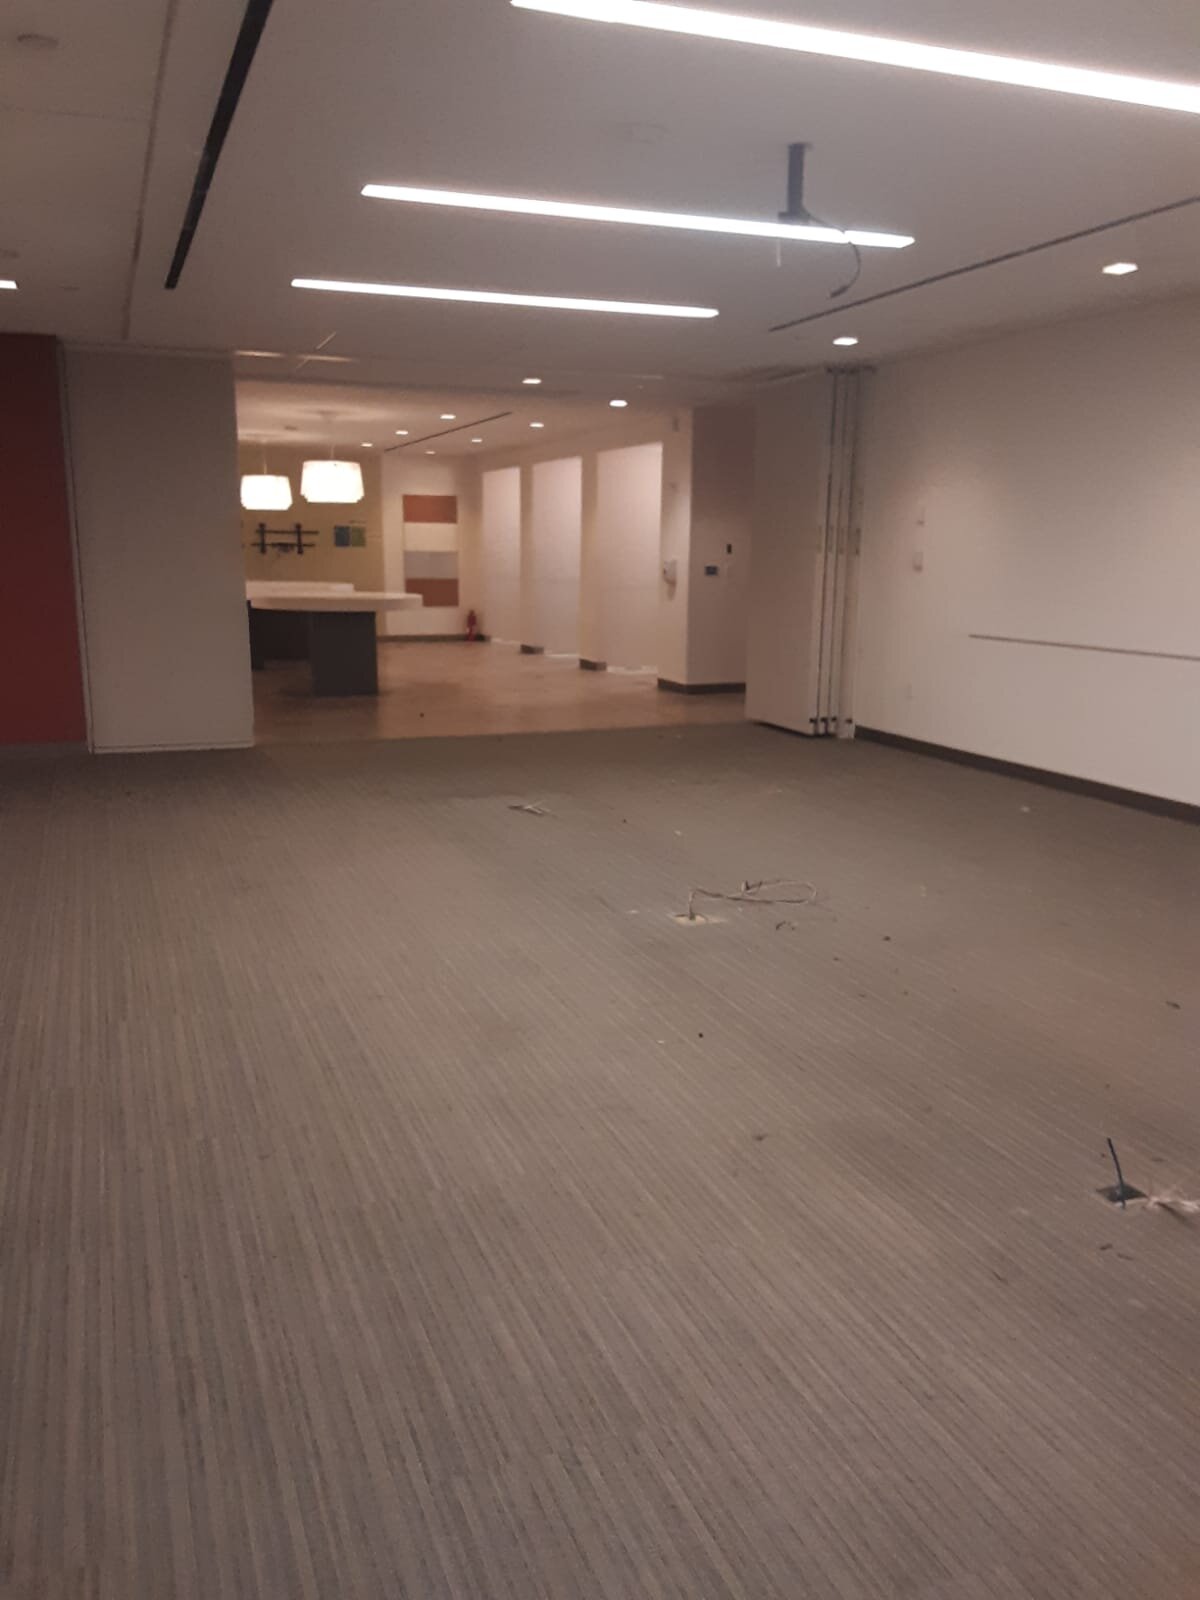 broom sweep floors - Office Furniture NYC (4).jpg